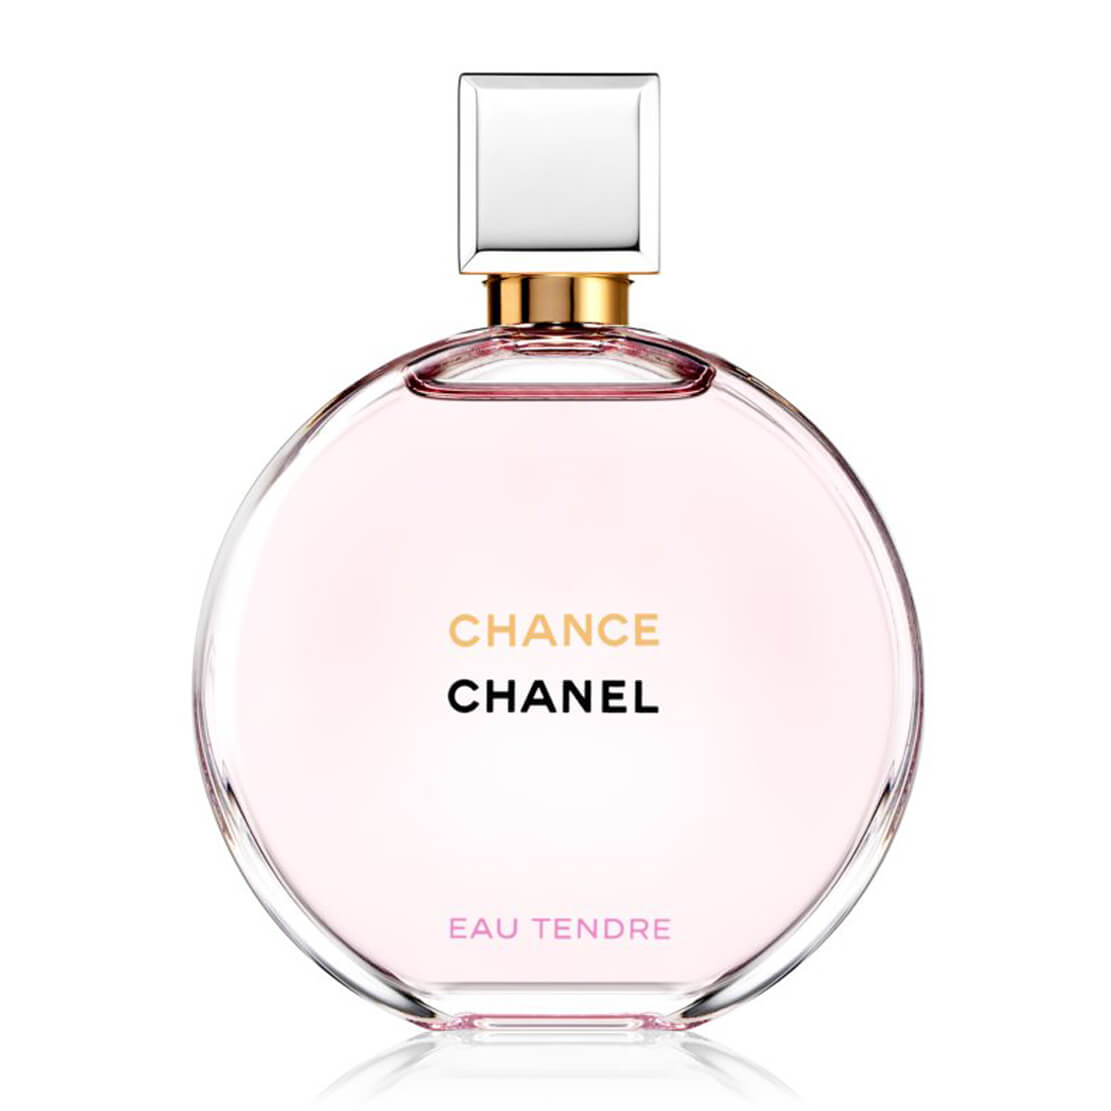 Buy Chanel Chance Eau Tendre Eau de Toilette - 100 ml Online at